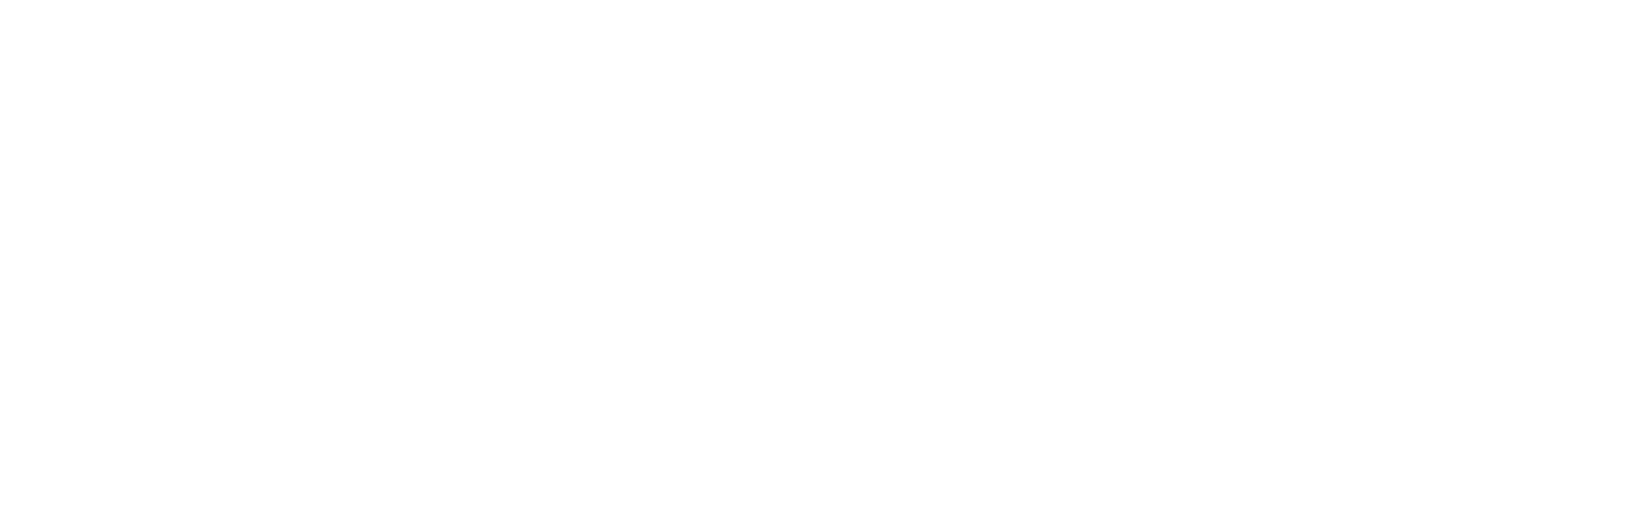 Filbo.hu